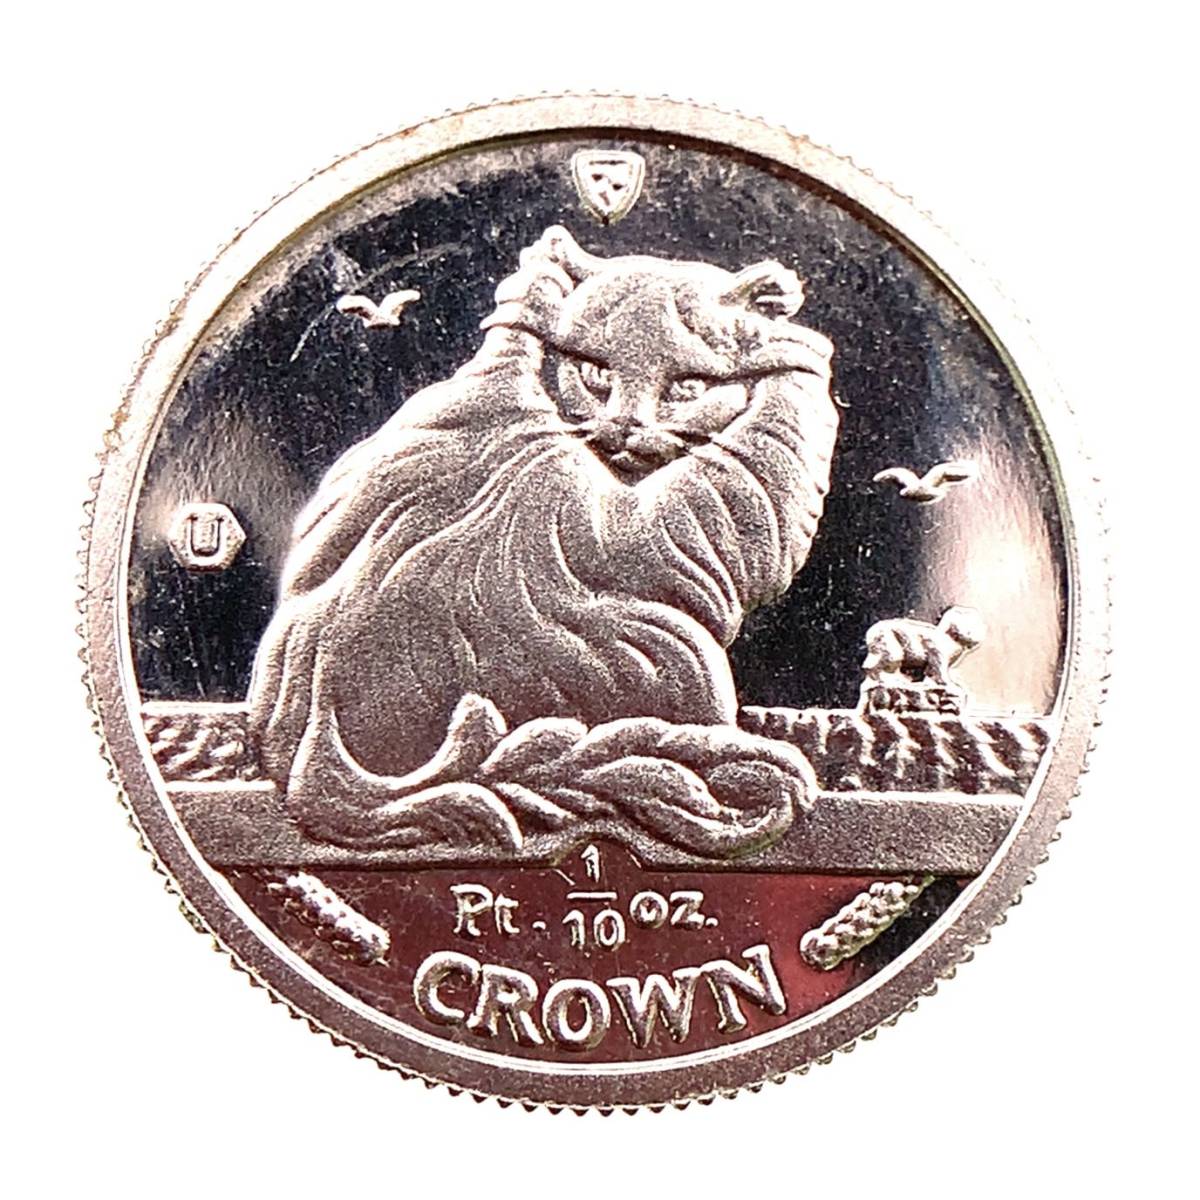  マン島金貨 エリザベス女王 ネコ CAT 猫 キャット 1/10オンス 1995年 3.1g プラチナ 999 コレクション Gold_画像1